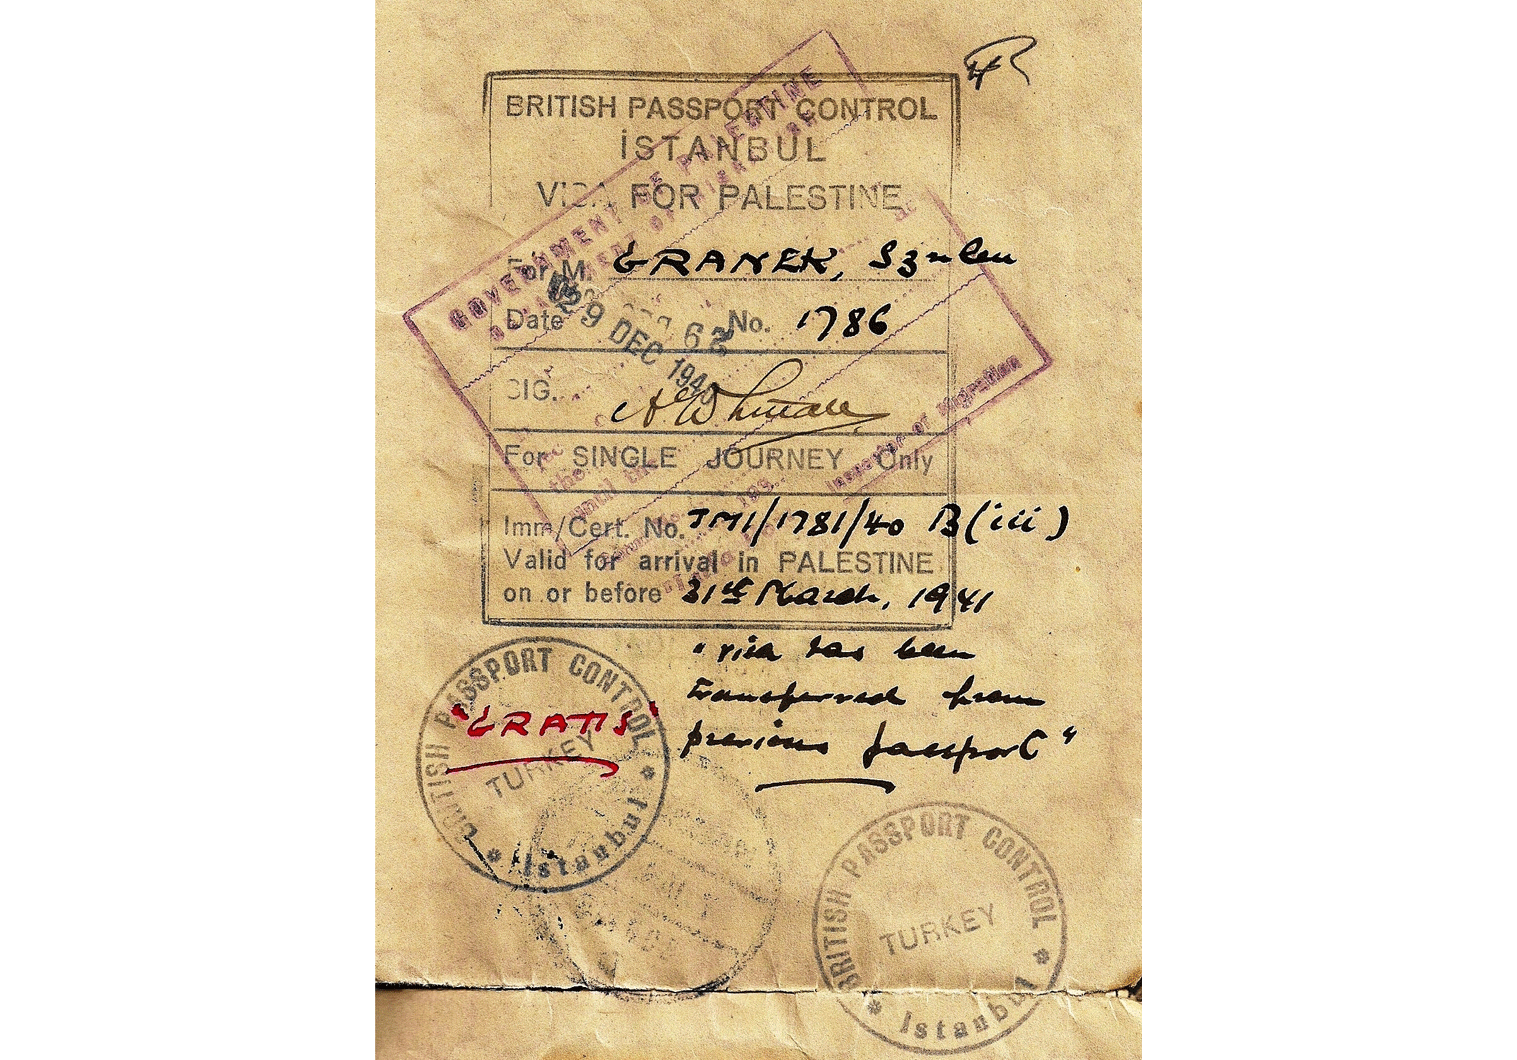 WW2 life-saving visas from Turkey